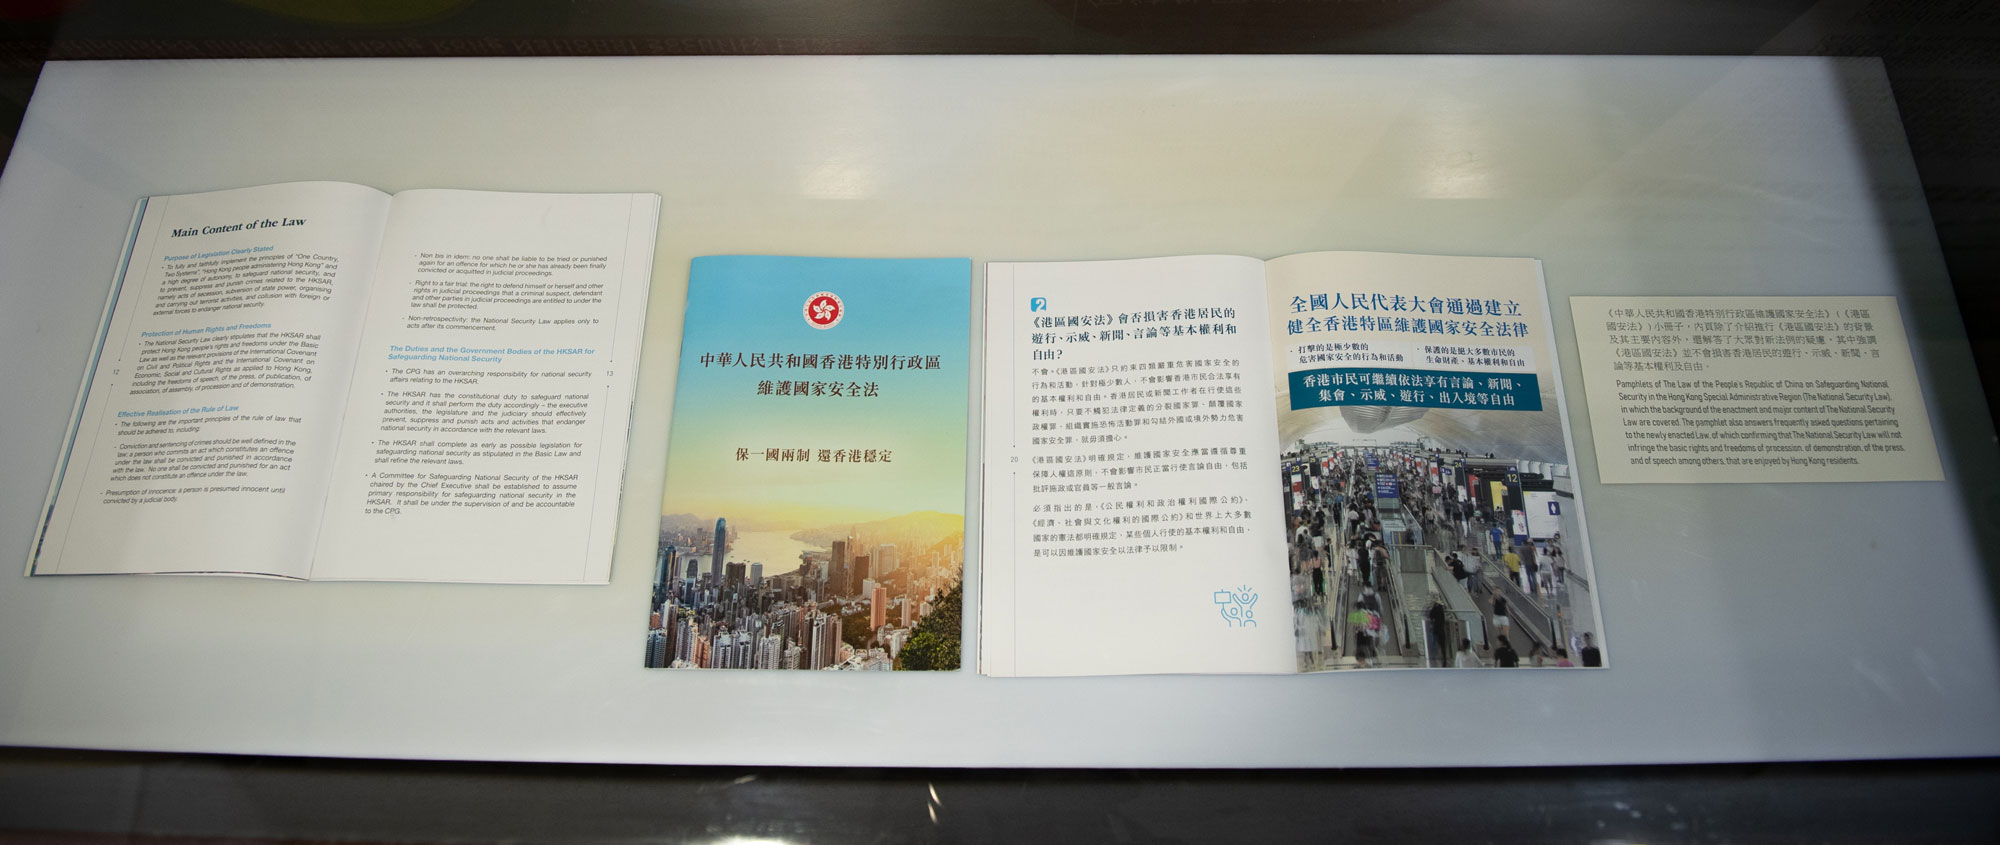 《中华人民共和国香港特别行政区维护国家安全法》小册子。